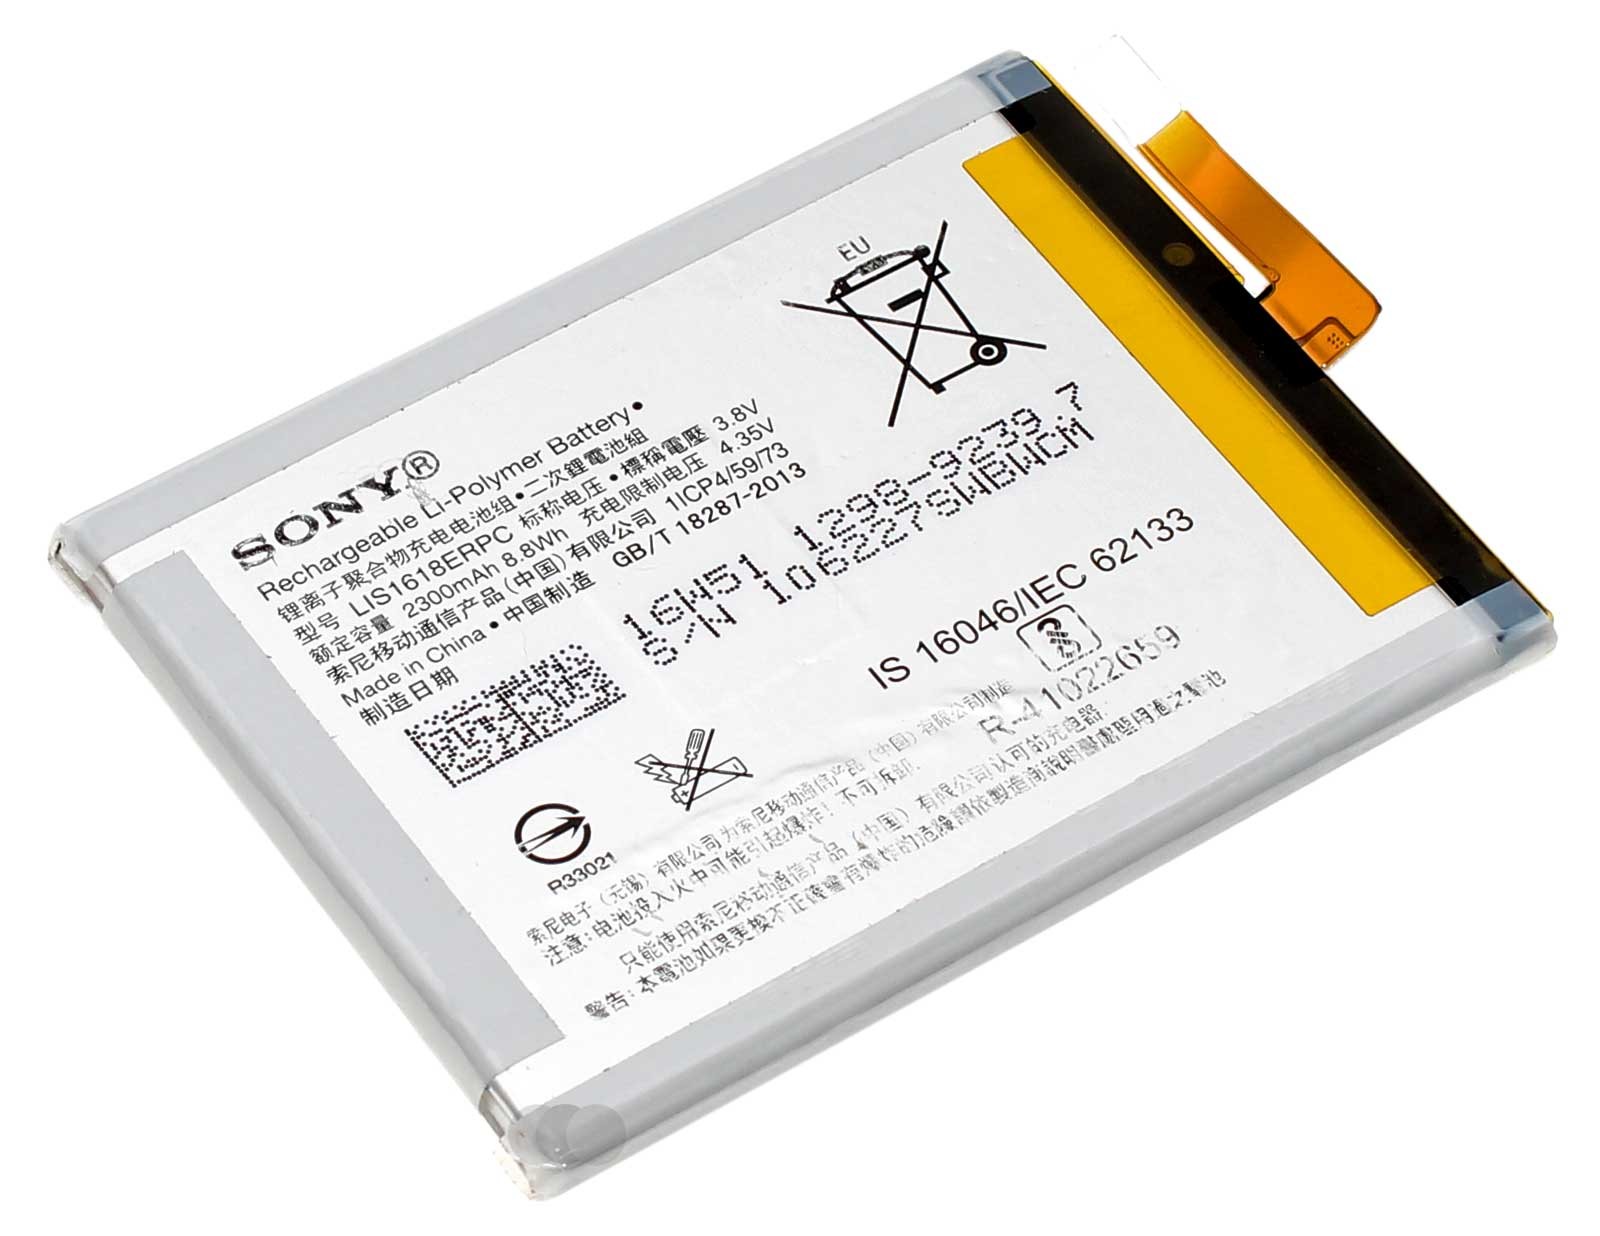 Original Sony Akku LIS1618ERPC (1298-9239) Lithium-Polymer für Sony Xperia XA und E5 Handy, Smartphone, Mobiltelefon mit 3,8 Volt und 2300mAh Kapazität